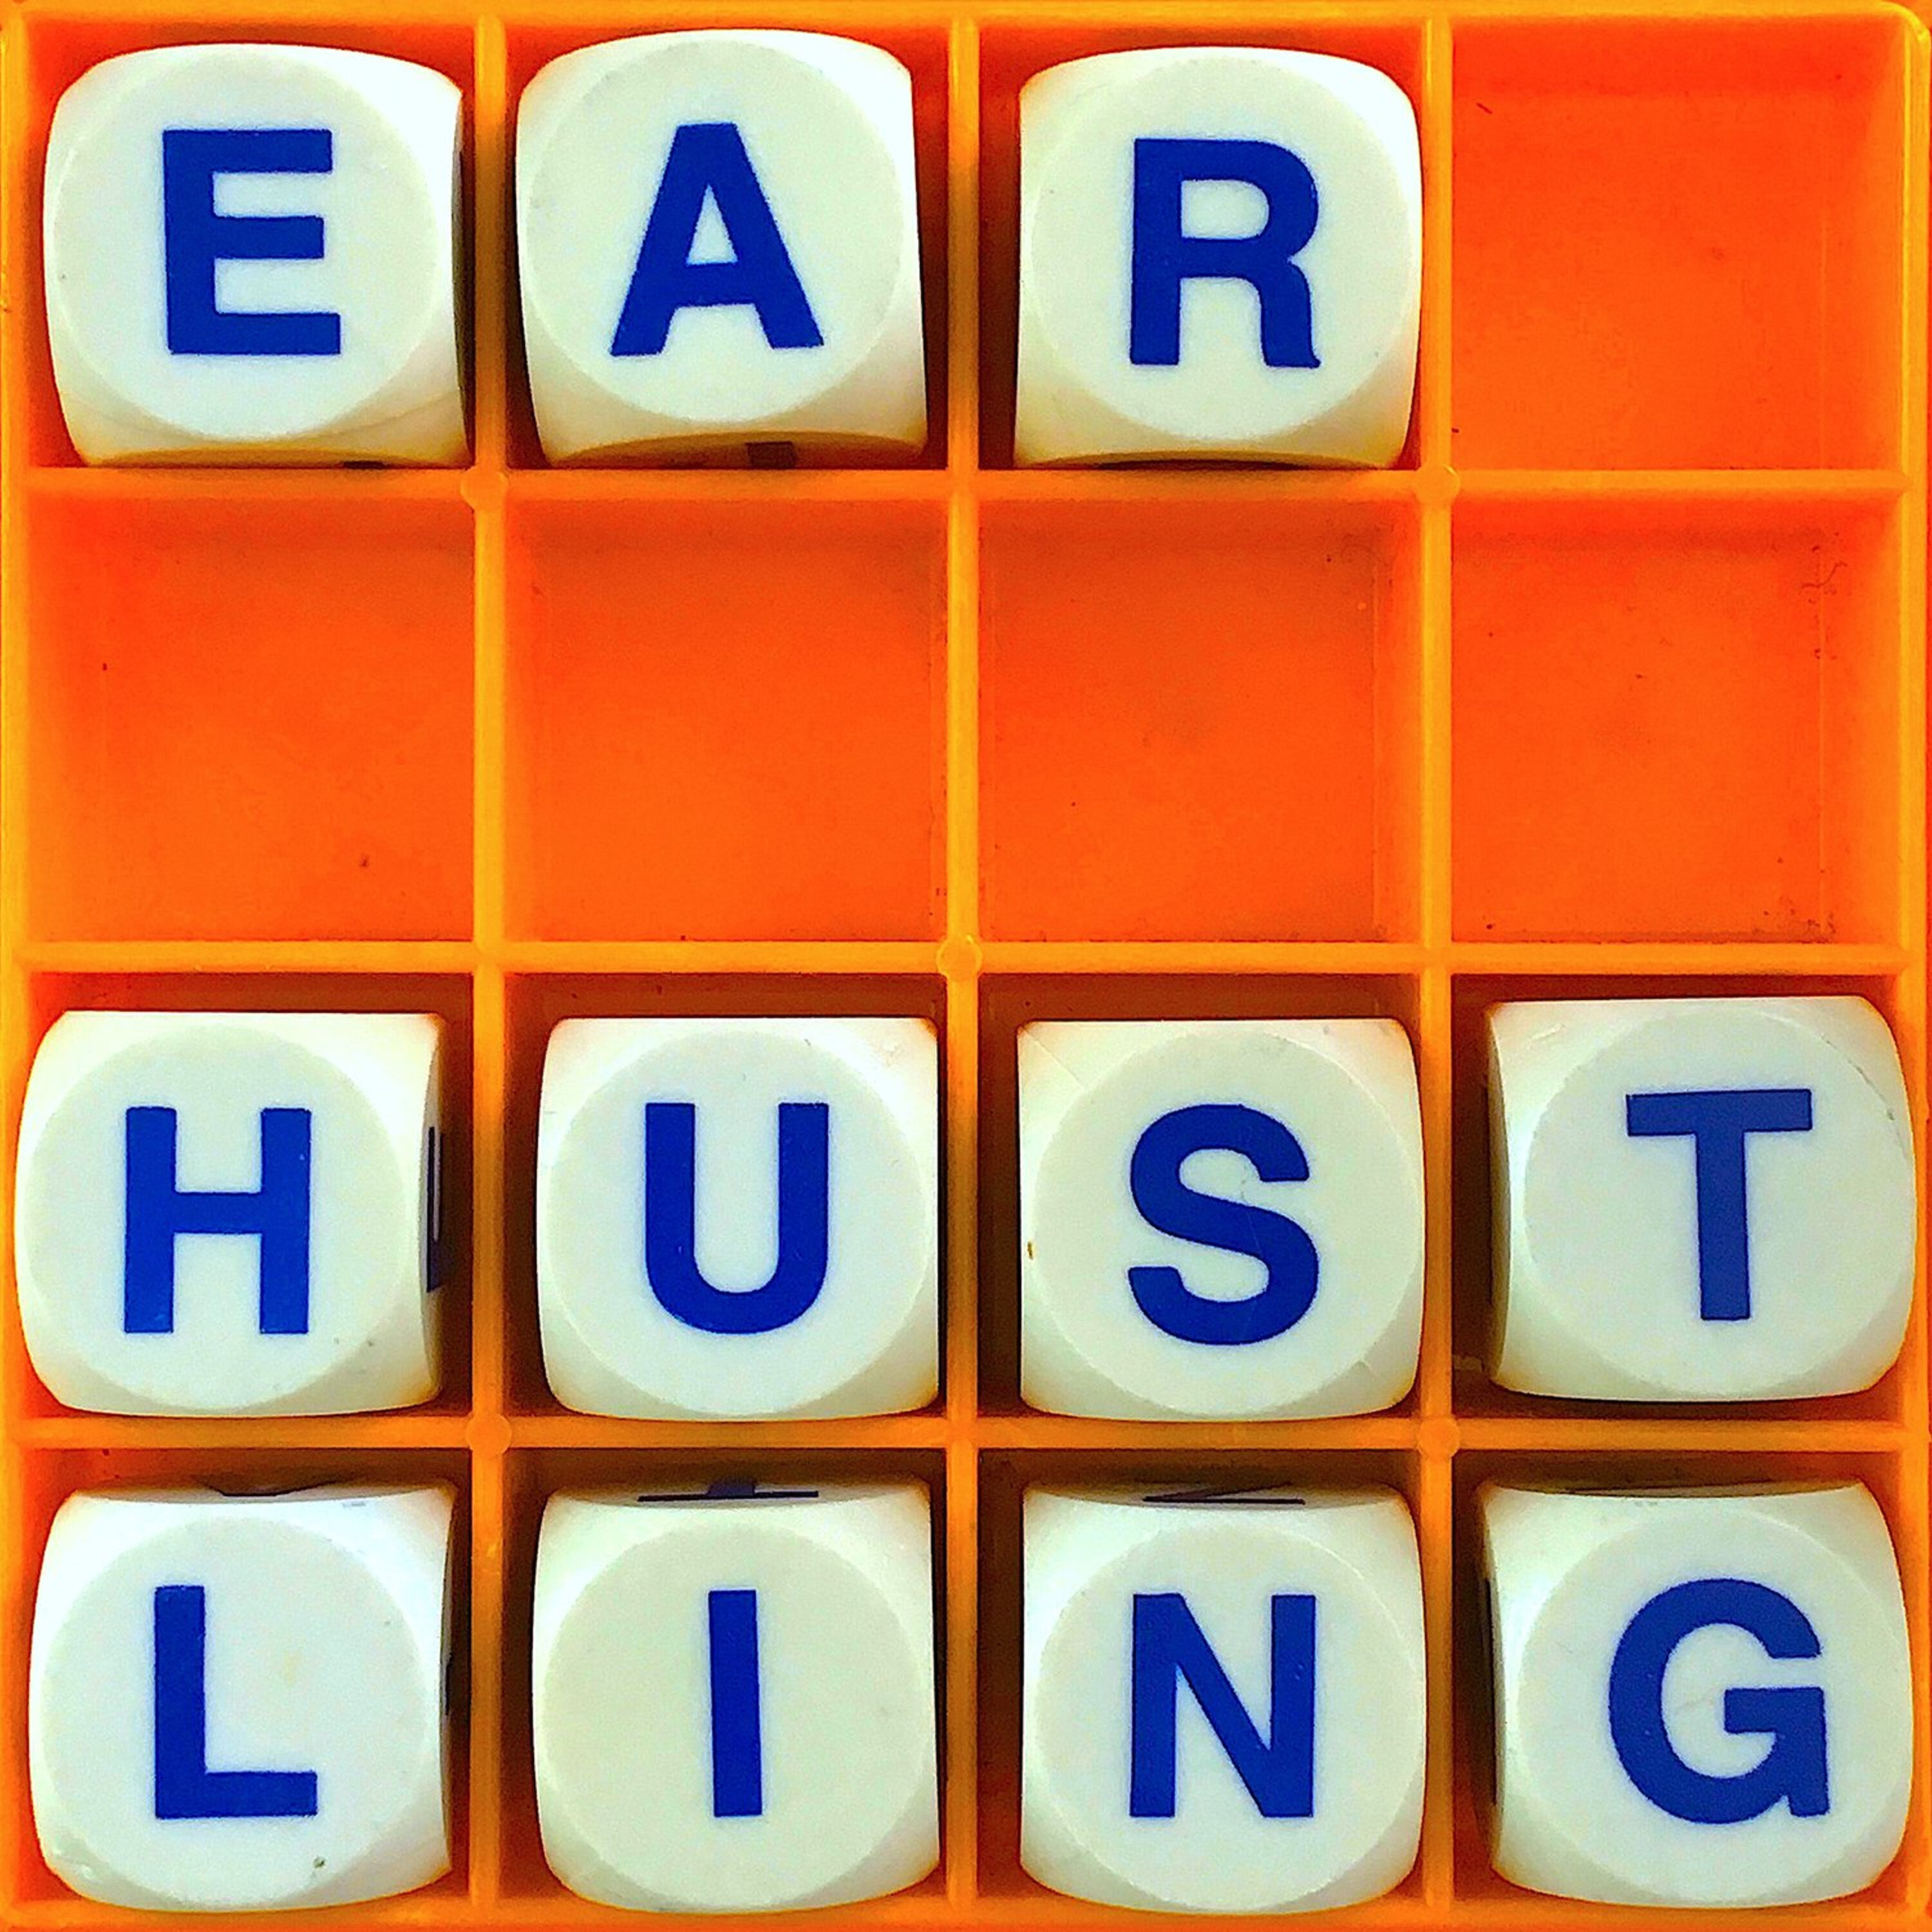 Thumbnail for "75. Ear Hustling".